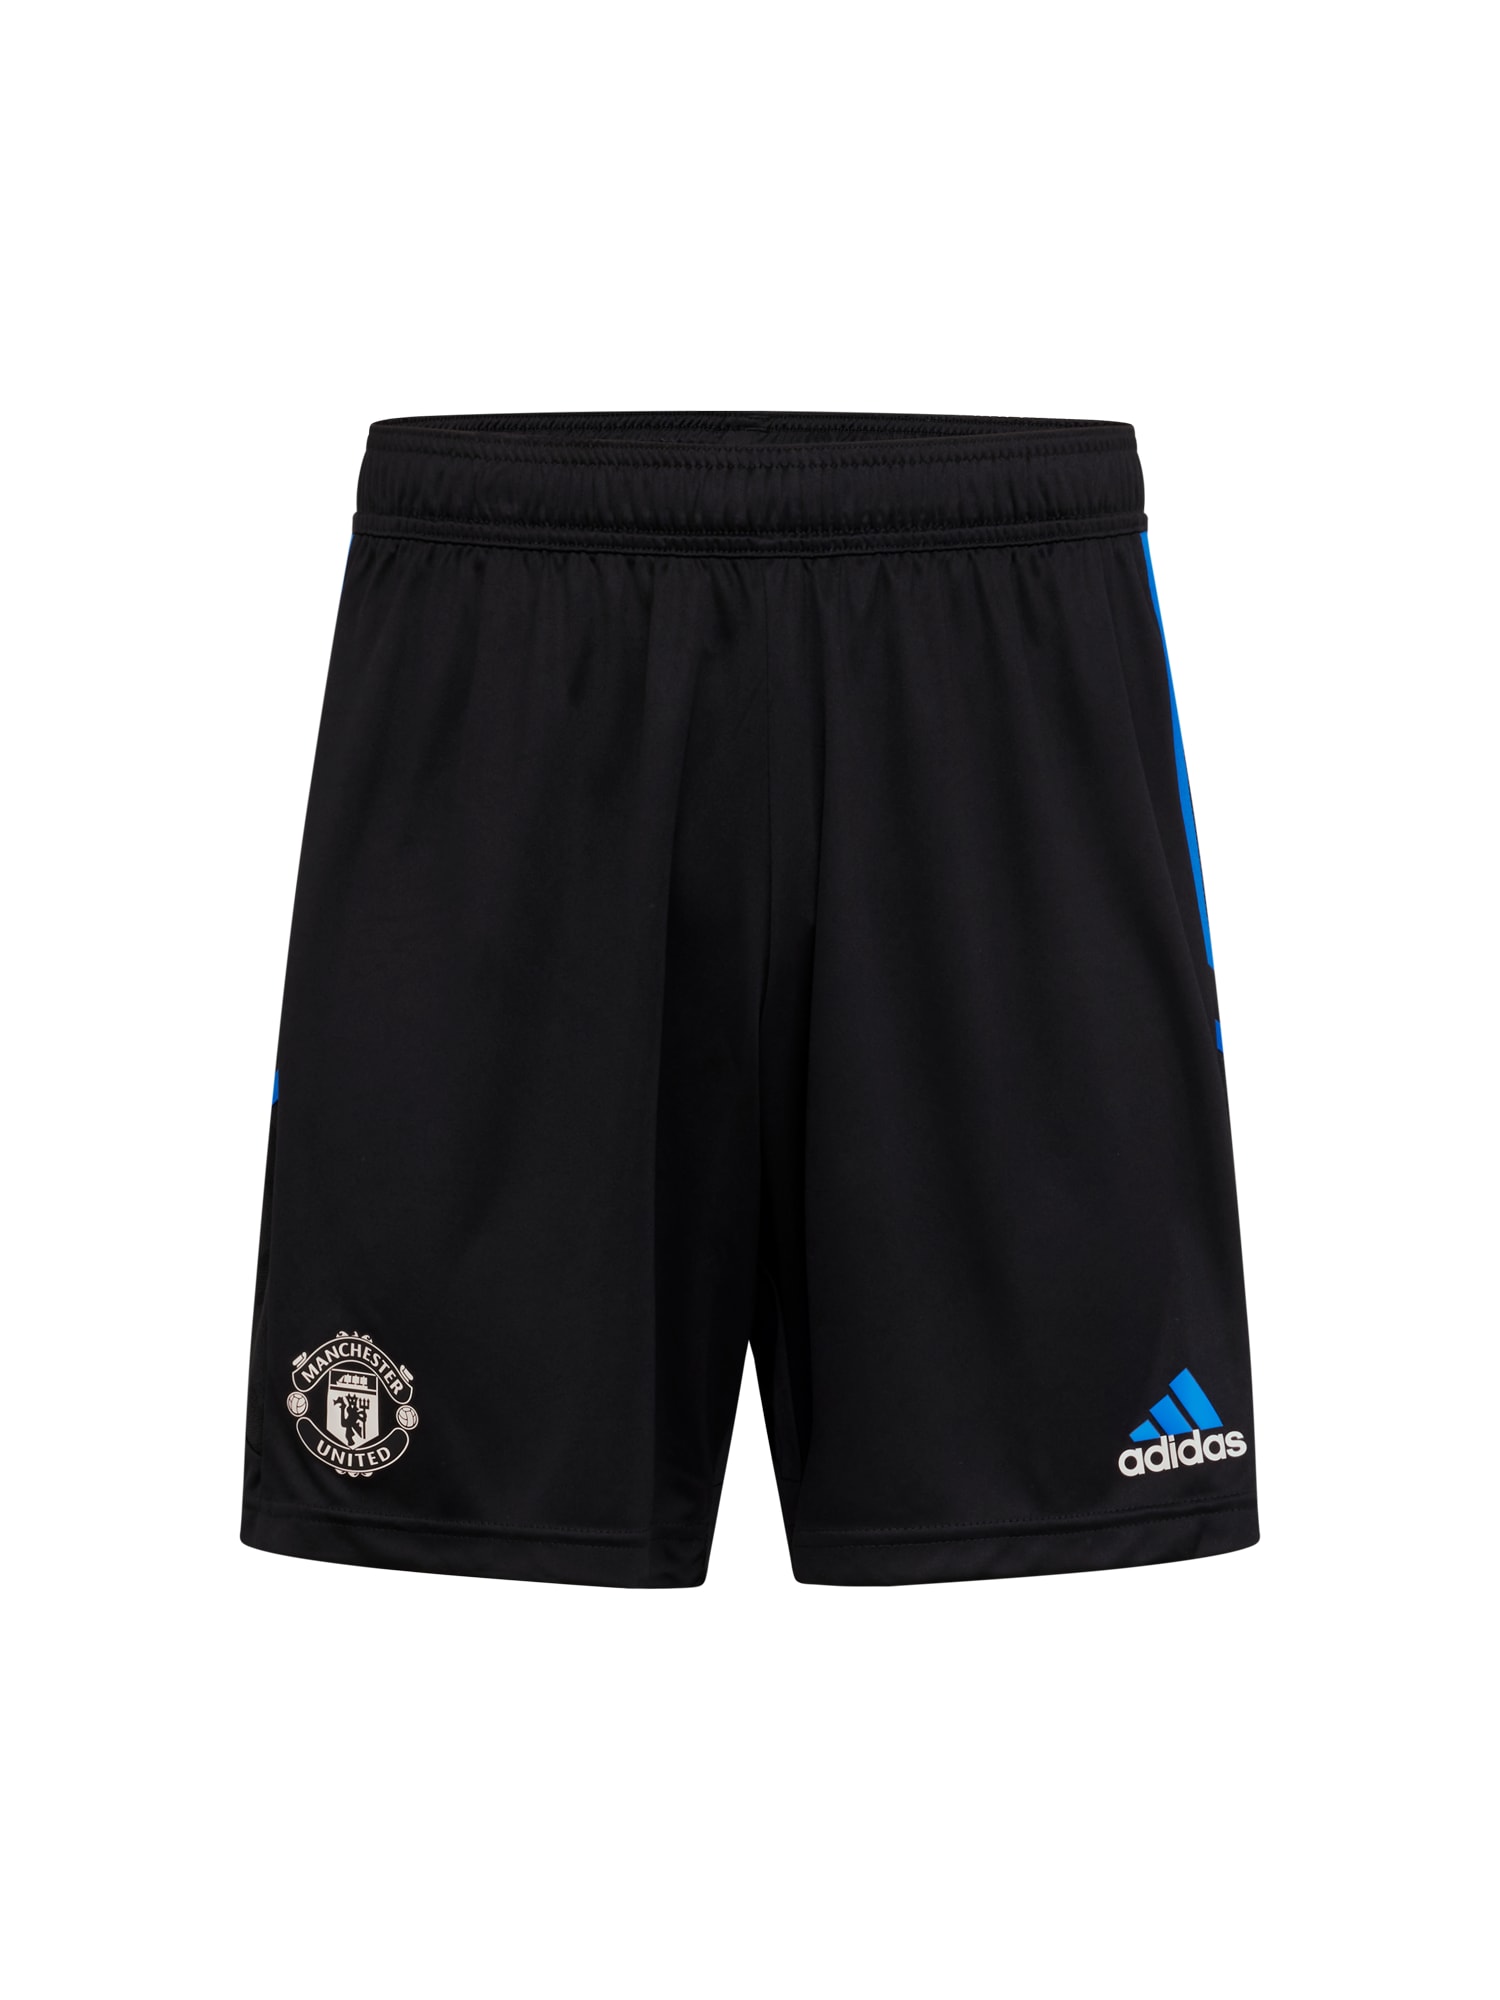 ADIDAS PERFORMANCE Športne hlače 'Manchester United'  modra / črna / bela